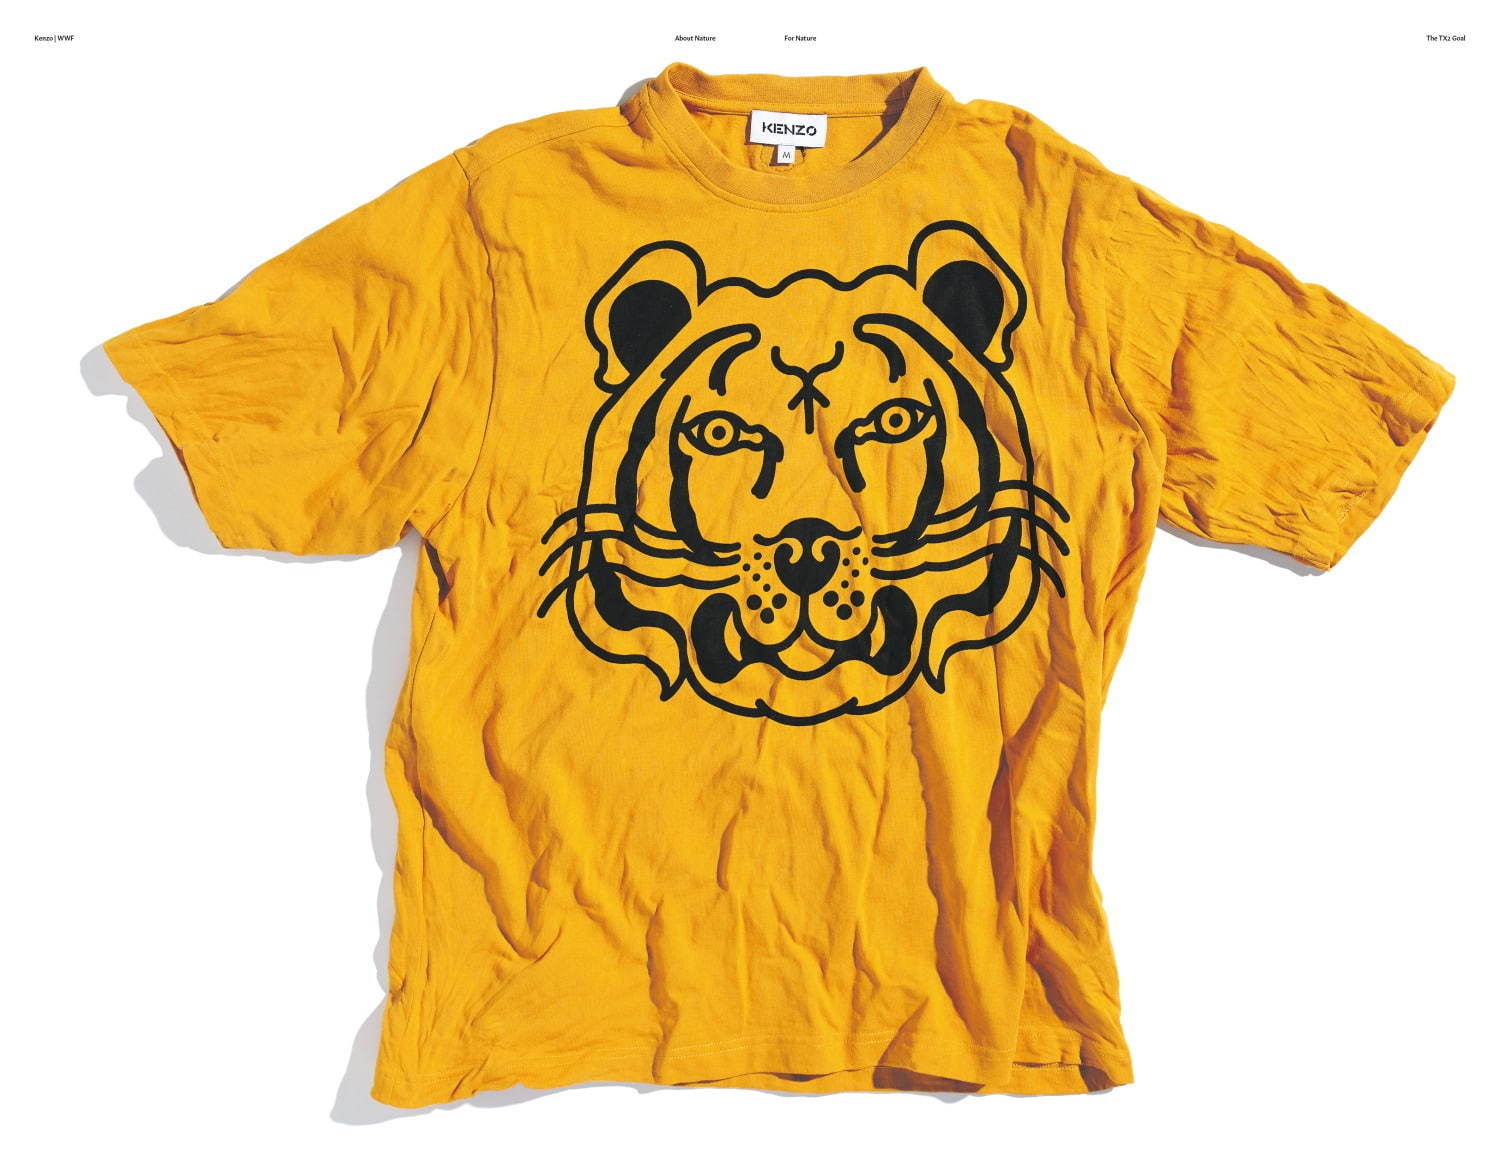 ケンゾー“タイガー”の立体刺繍入りフーディやTシャツ、オーガニック